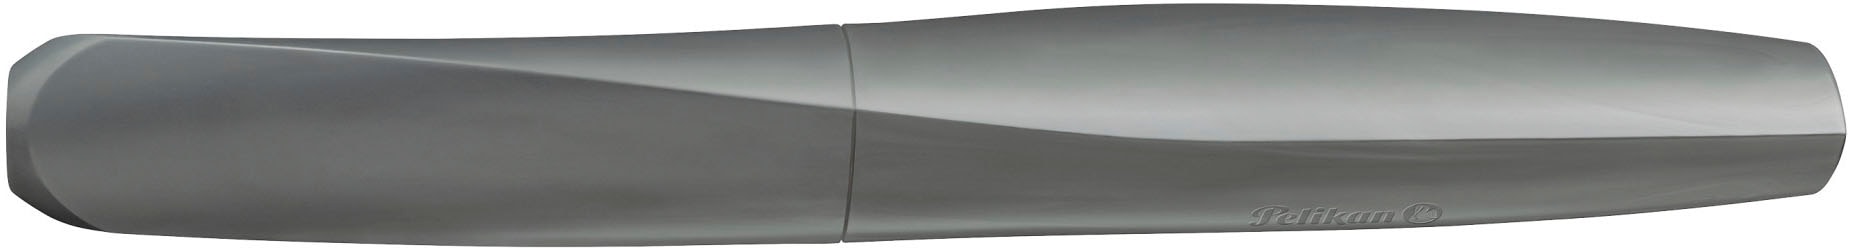 Modische Pelikan Füller »Twist® eco, Grey, Feder M«, Made in Germany;  enthält recyceltes Material ohne Mindestbestellwert bestellen